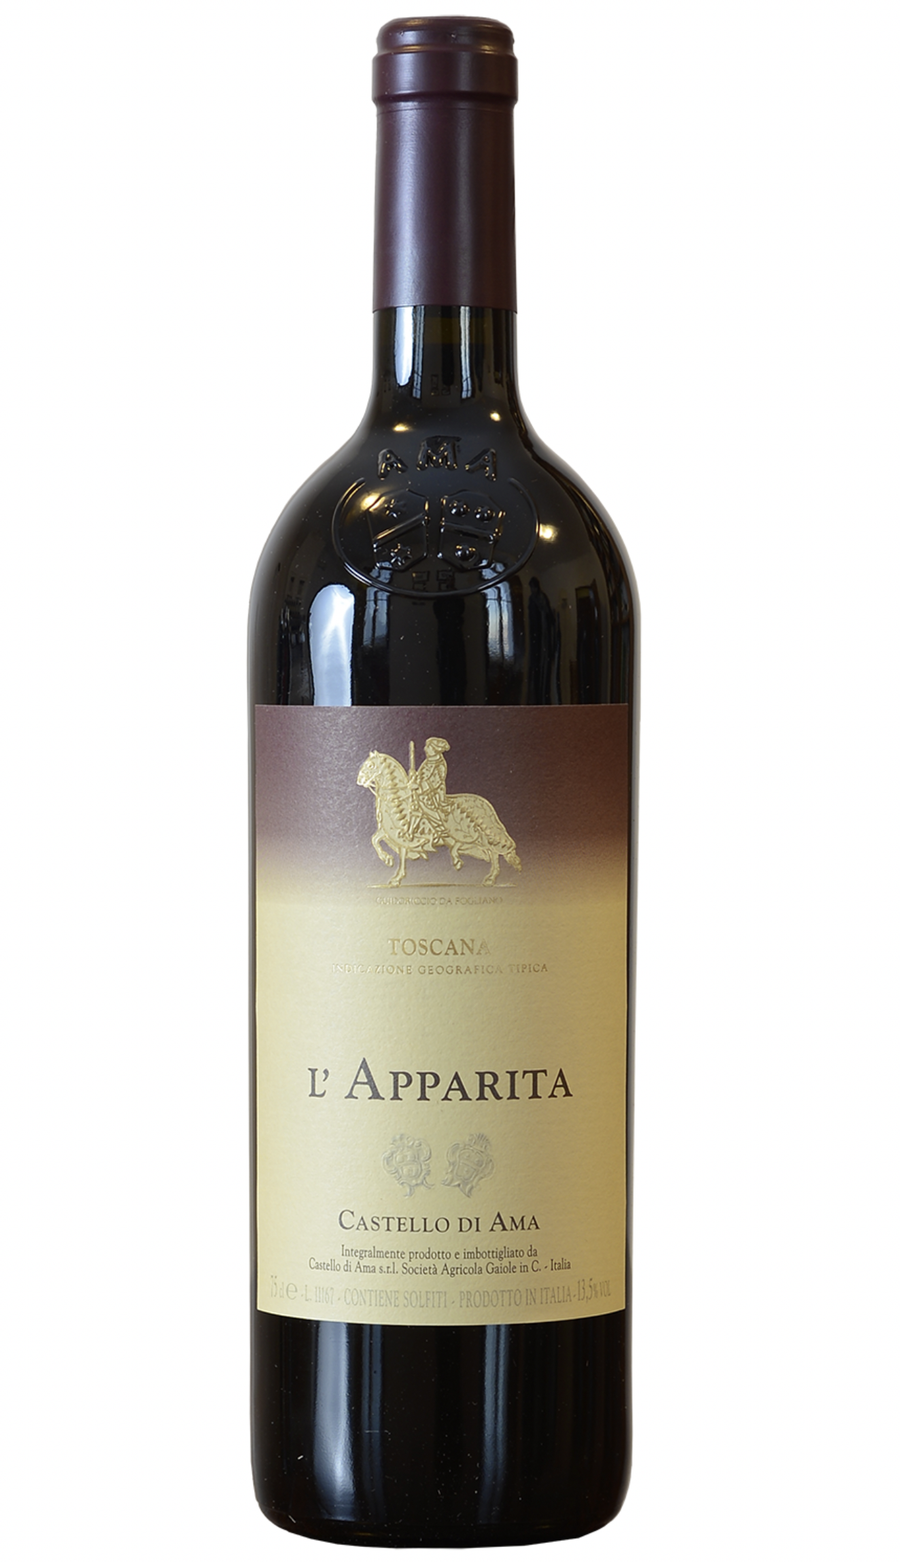 Castello di Ama L'Apparita 2013 - 2021 winery release